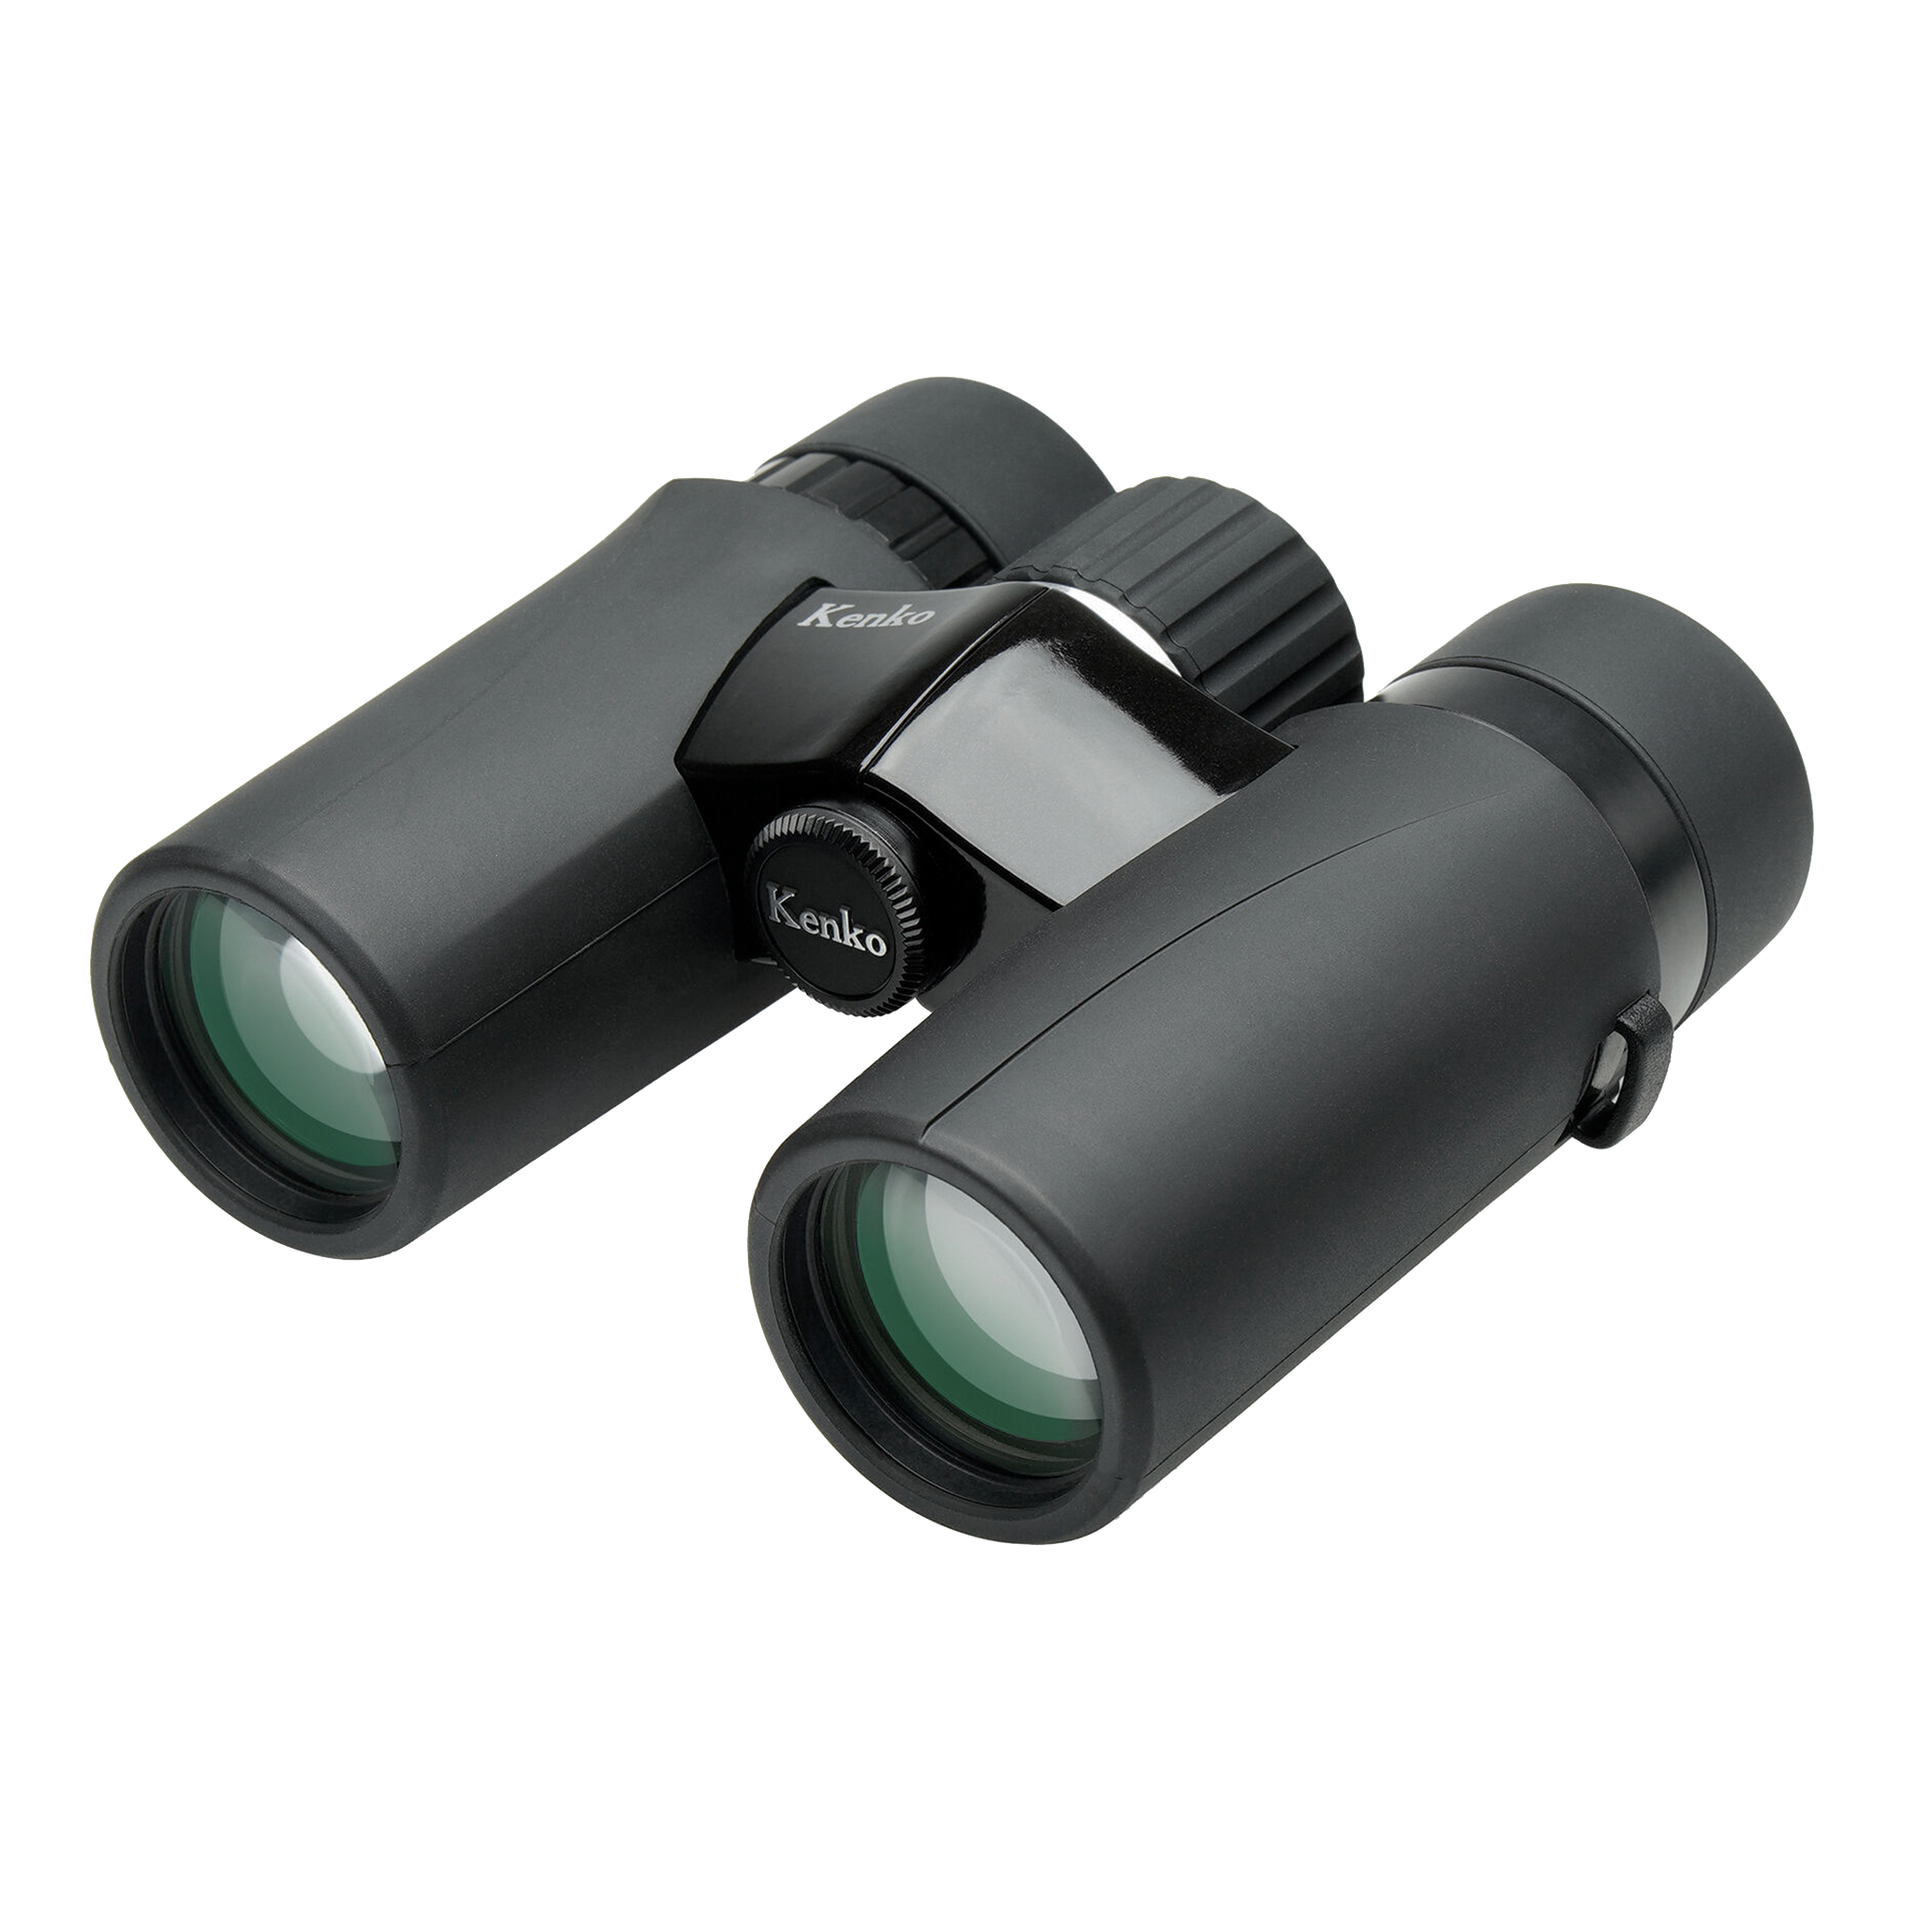 Kenko Ultraview EX Compact Binocular 8x32 / 10x32, Full-spec prism